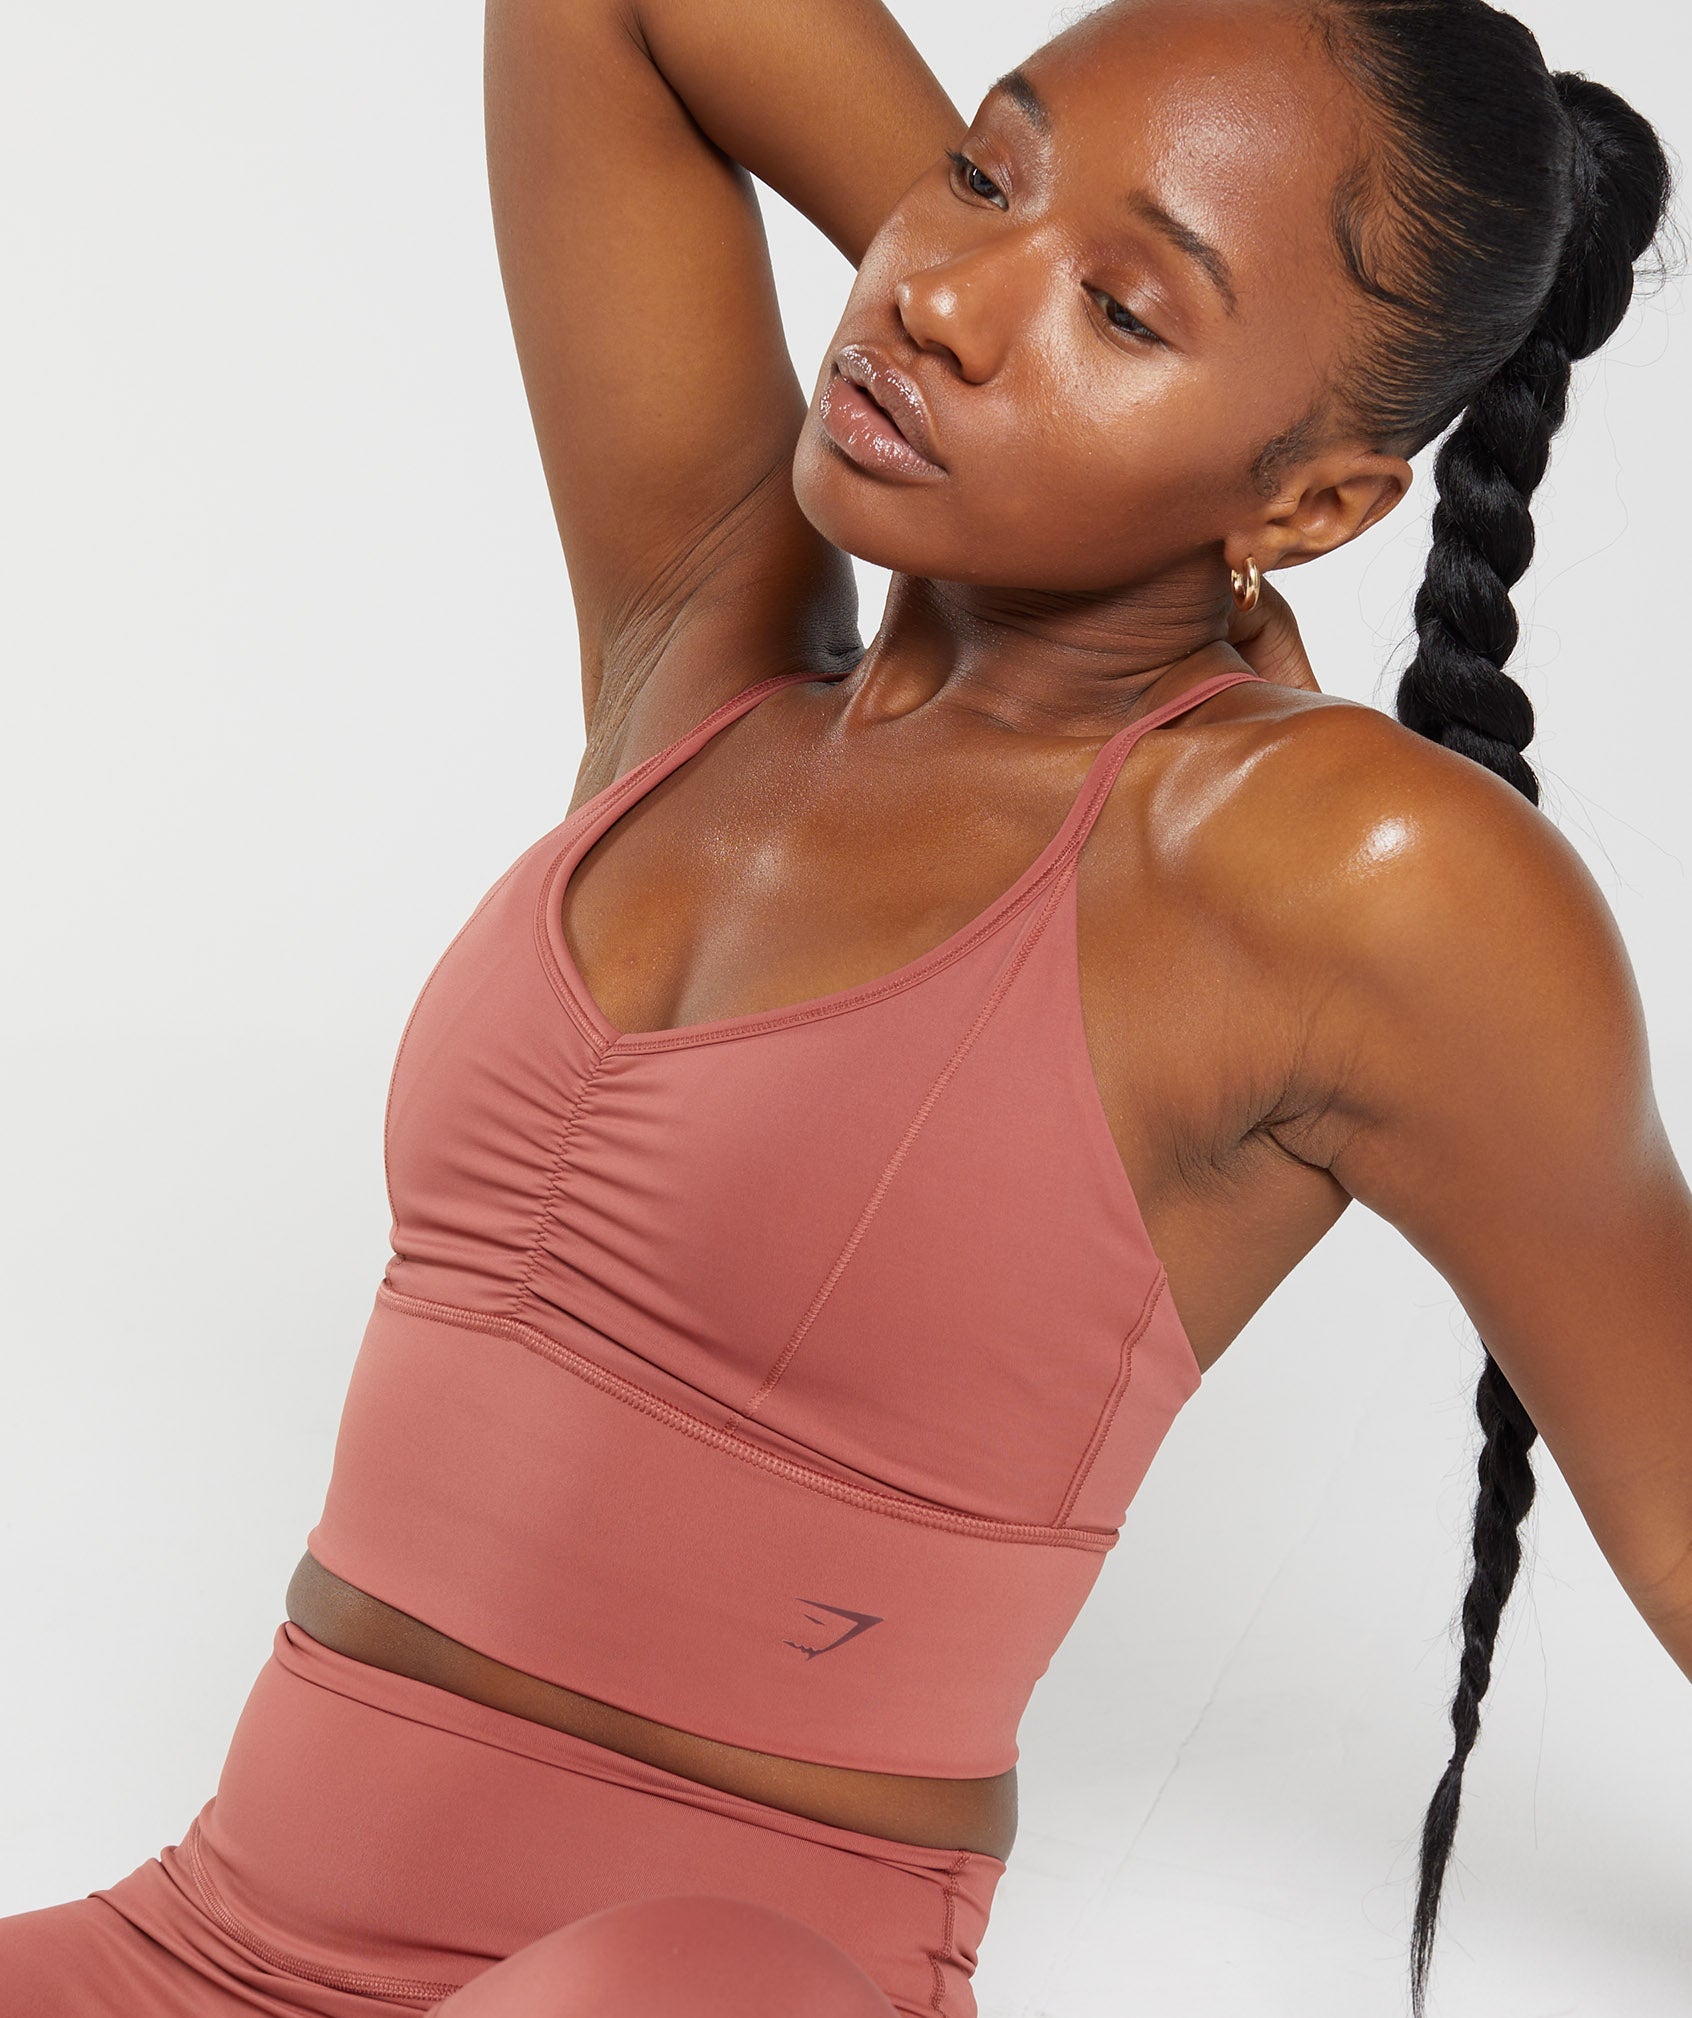 BJUTIR Bras For Women Longline Sports Bra High Impact Yoga Tops Built In  Bra Crop Top Sports Bra Wireless Racerback Bra 